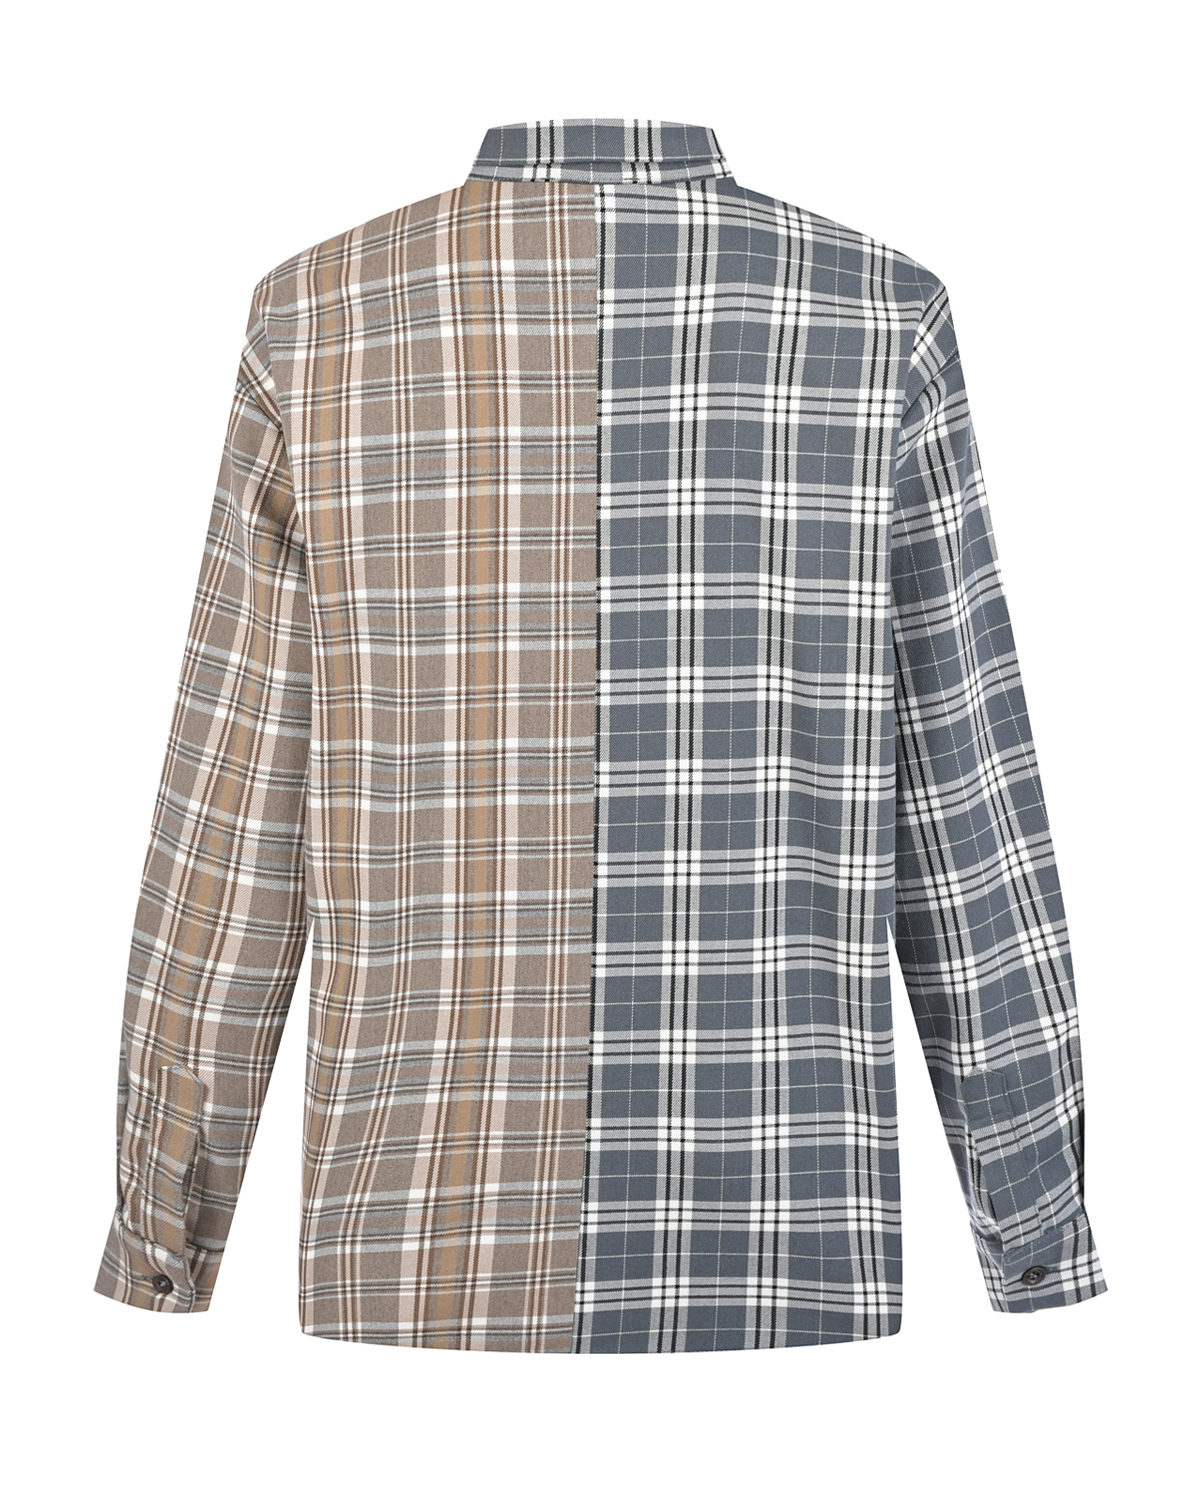 Комбинированная рубашка в клетку Dan Maralex, размер 46, цвет серый - фото 5